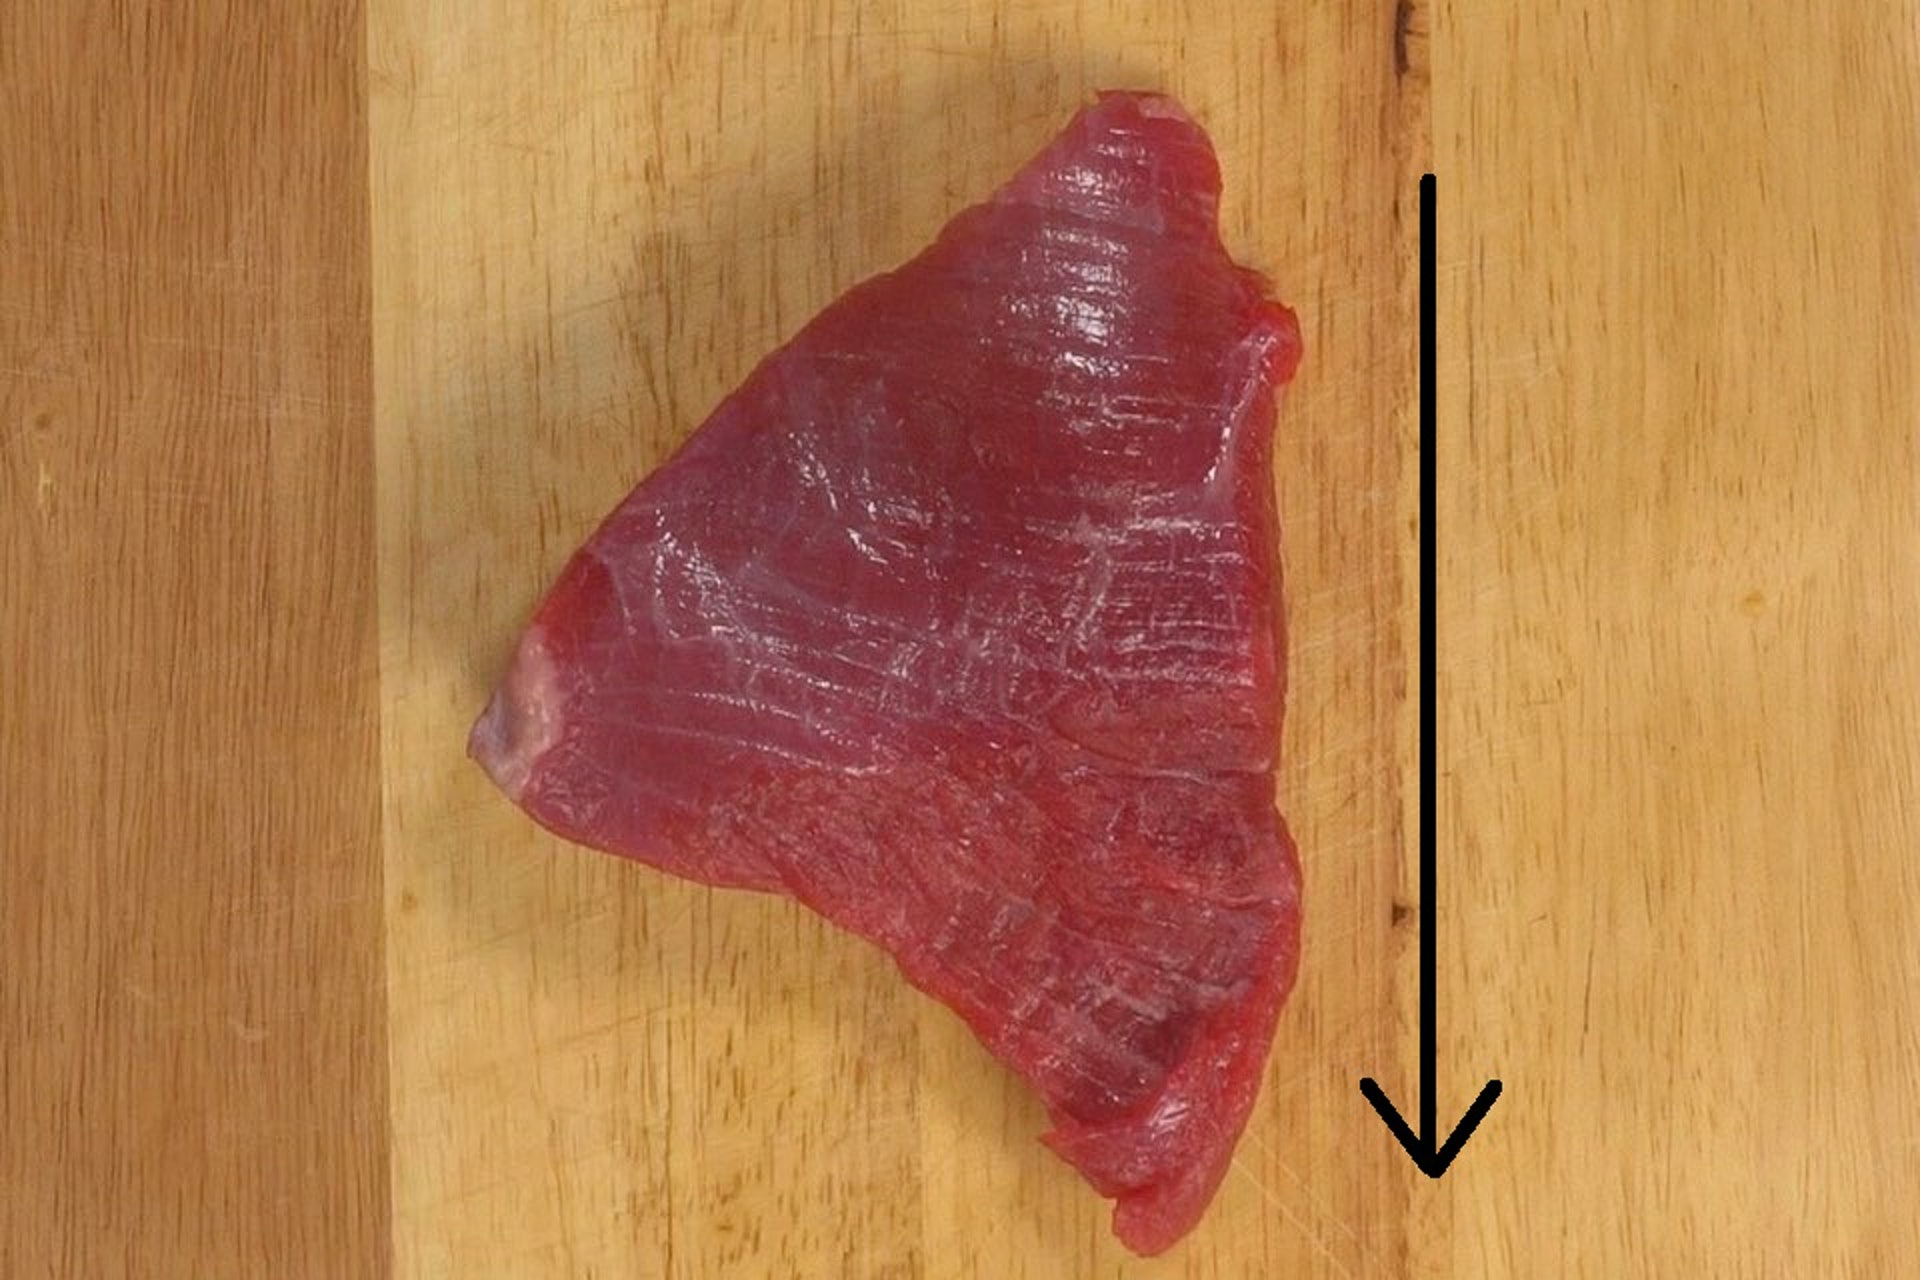 以图中的牛肉为例,察看到其纹理是横向的,所以如果要「逆纹」切的话